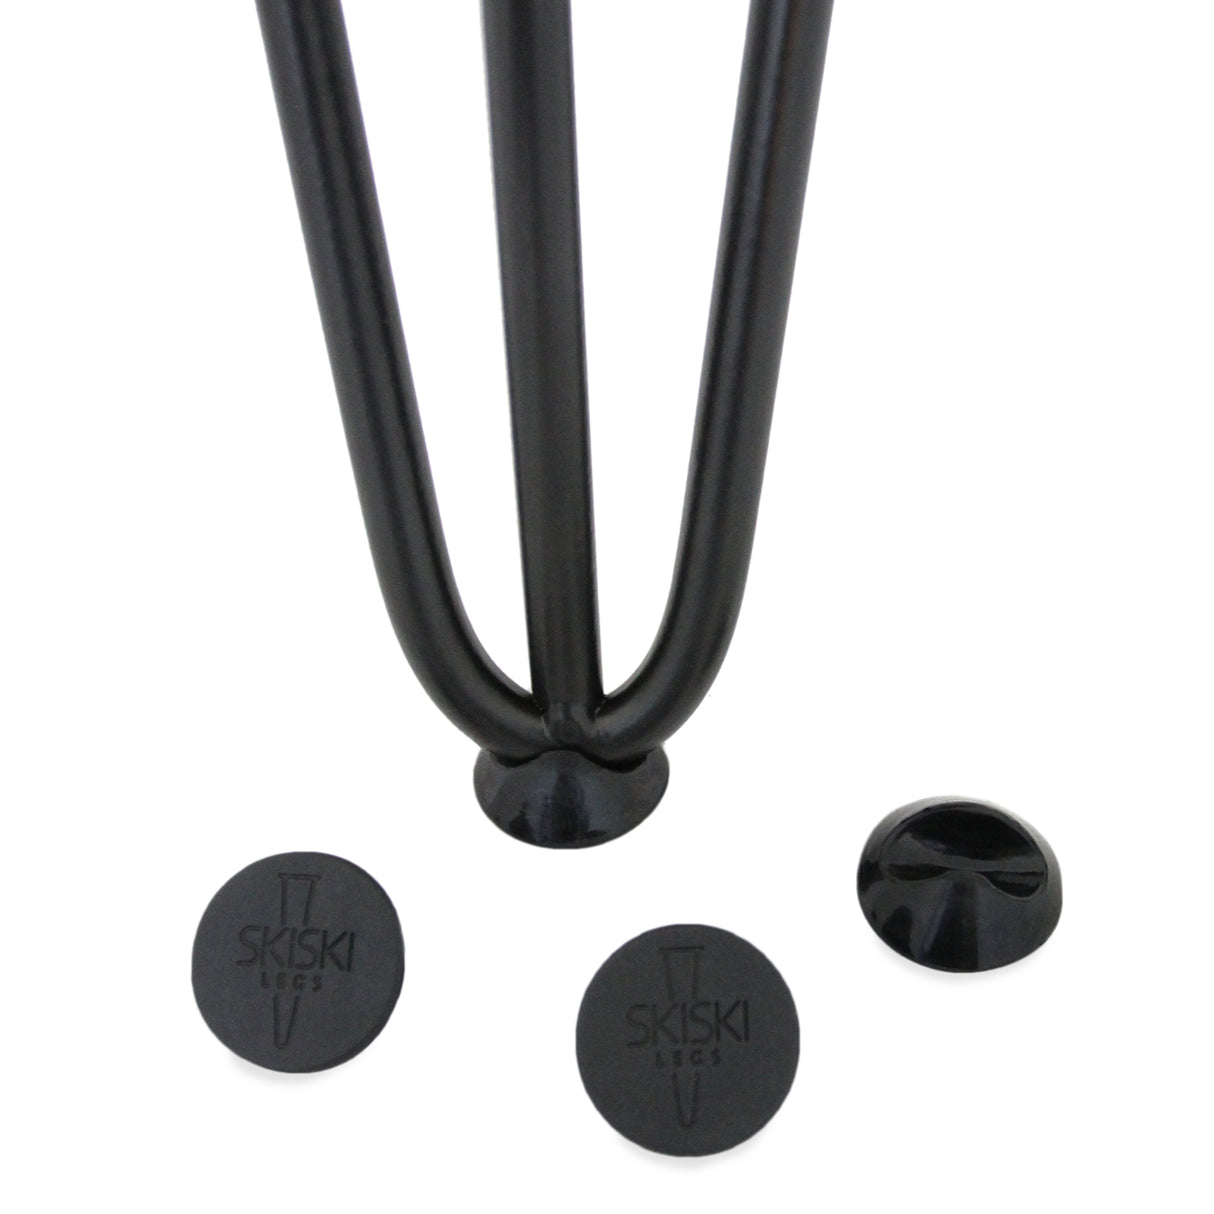 4 Pieds de Table en Épingle à Cheveux - 30,5cm - 2 Tiges - 10mm – Fini Noir